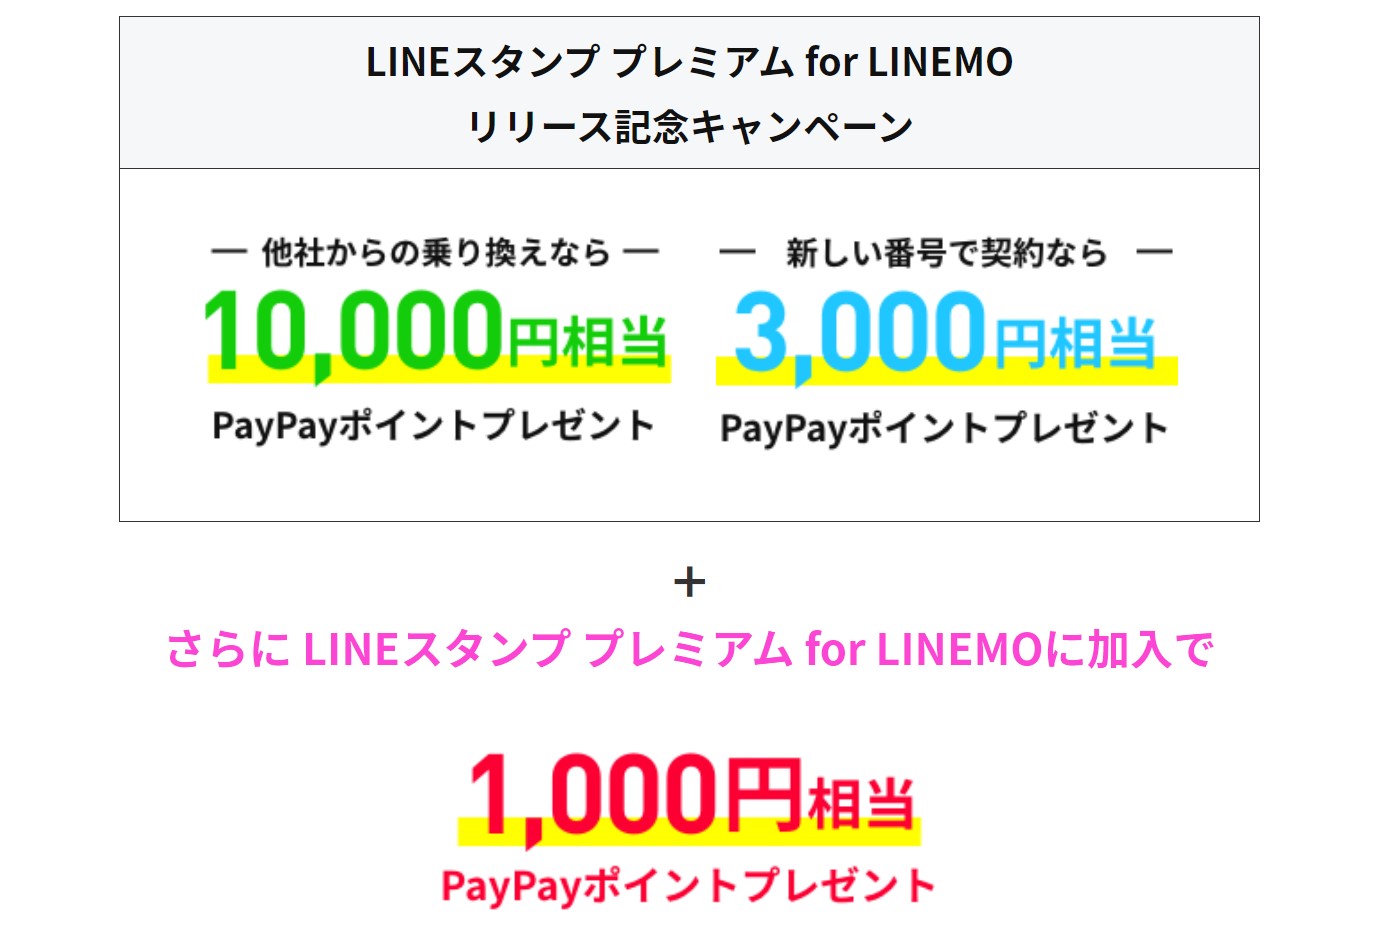 LINEスタンプ プレミアム for LINEMOリリース記念キャンペーンの特典の説明_新規＆乗り換え特典に加えて、オプション加入で追加,1000PayPayポイントがもらえる